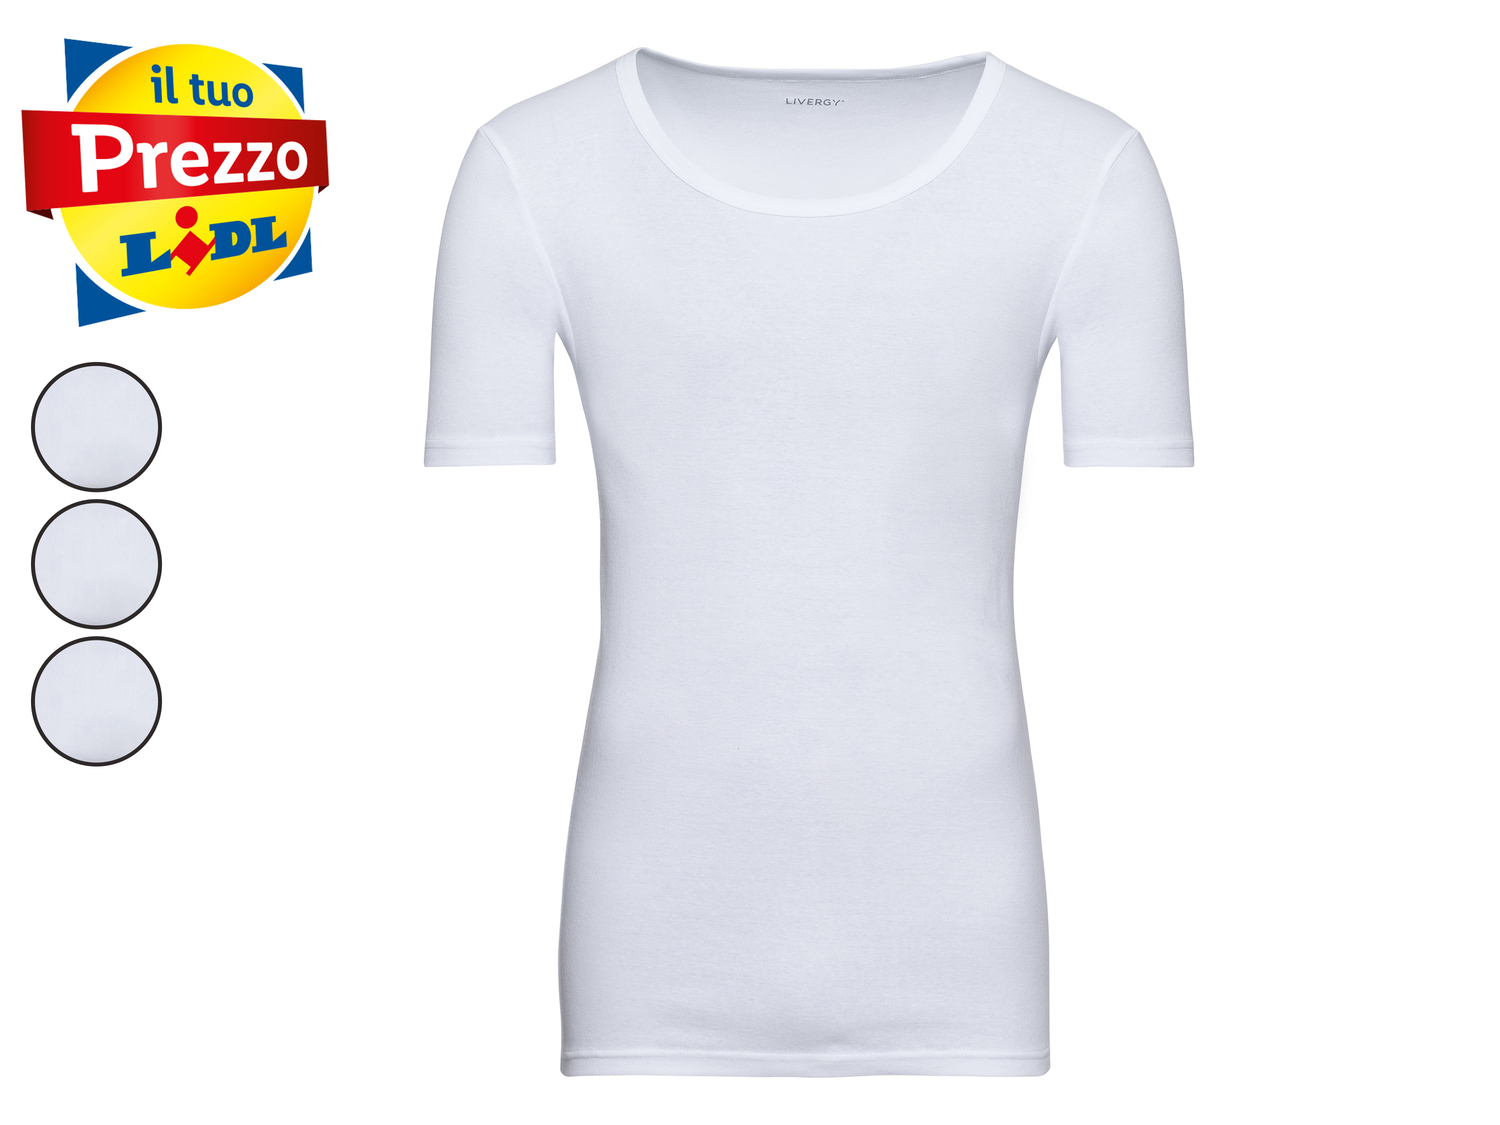 T-Shirt intima da uomo Livergy, prezzo 7.99 &#8364; 
3 pezzi - Misure: M-XL ...